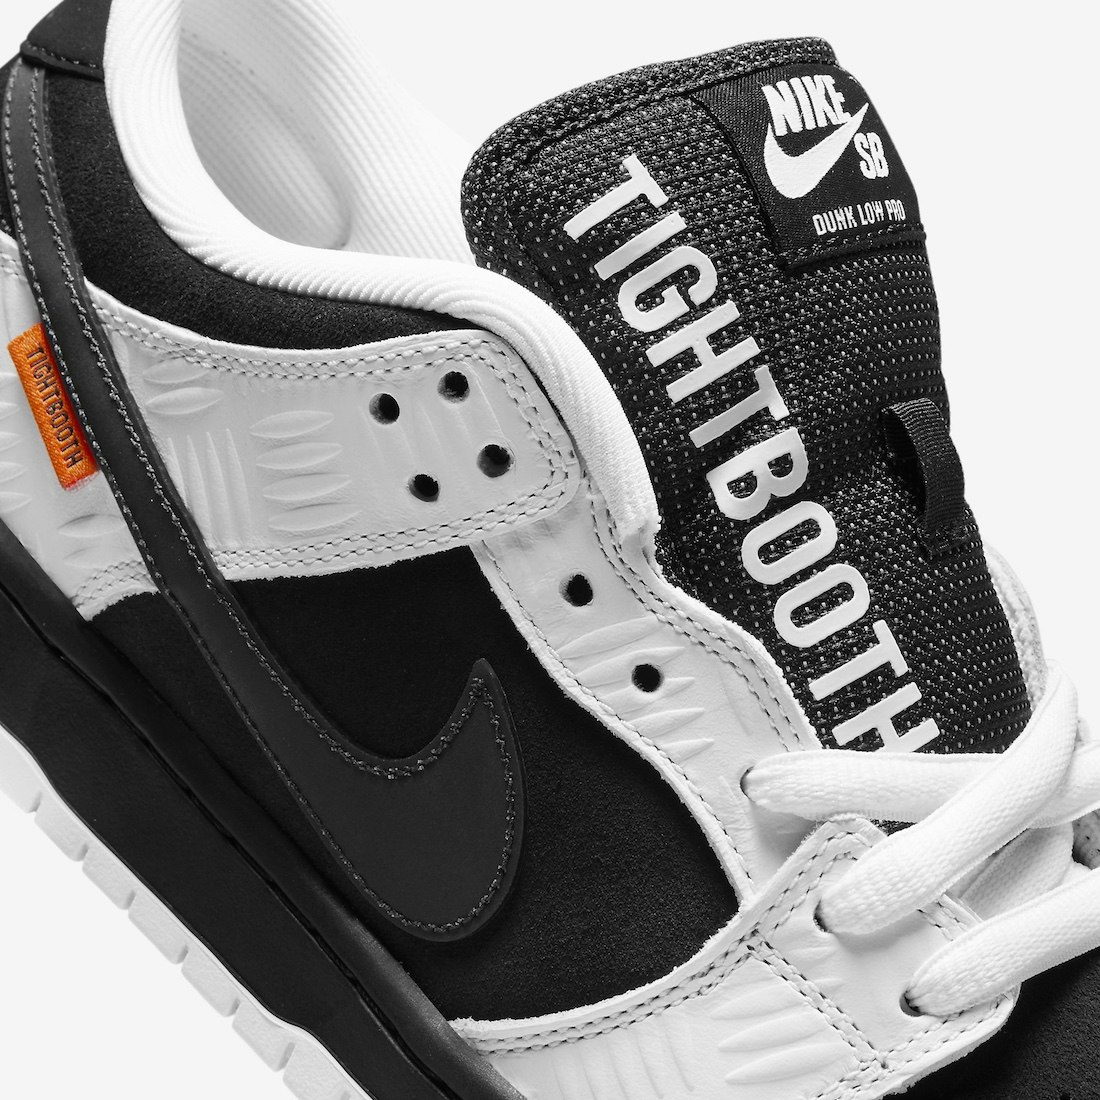 TIGHTBOOTH x Nike SB Dunk Low 